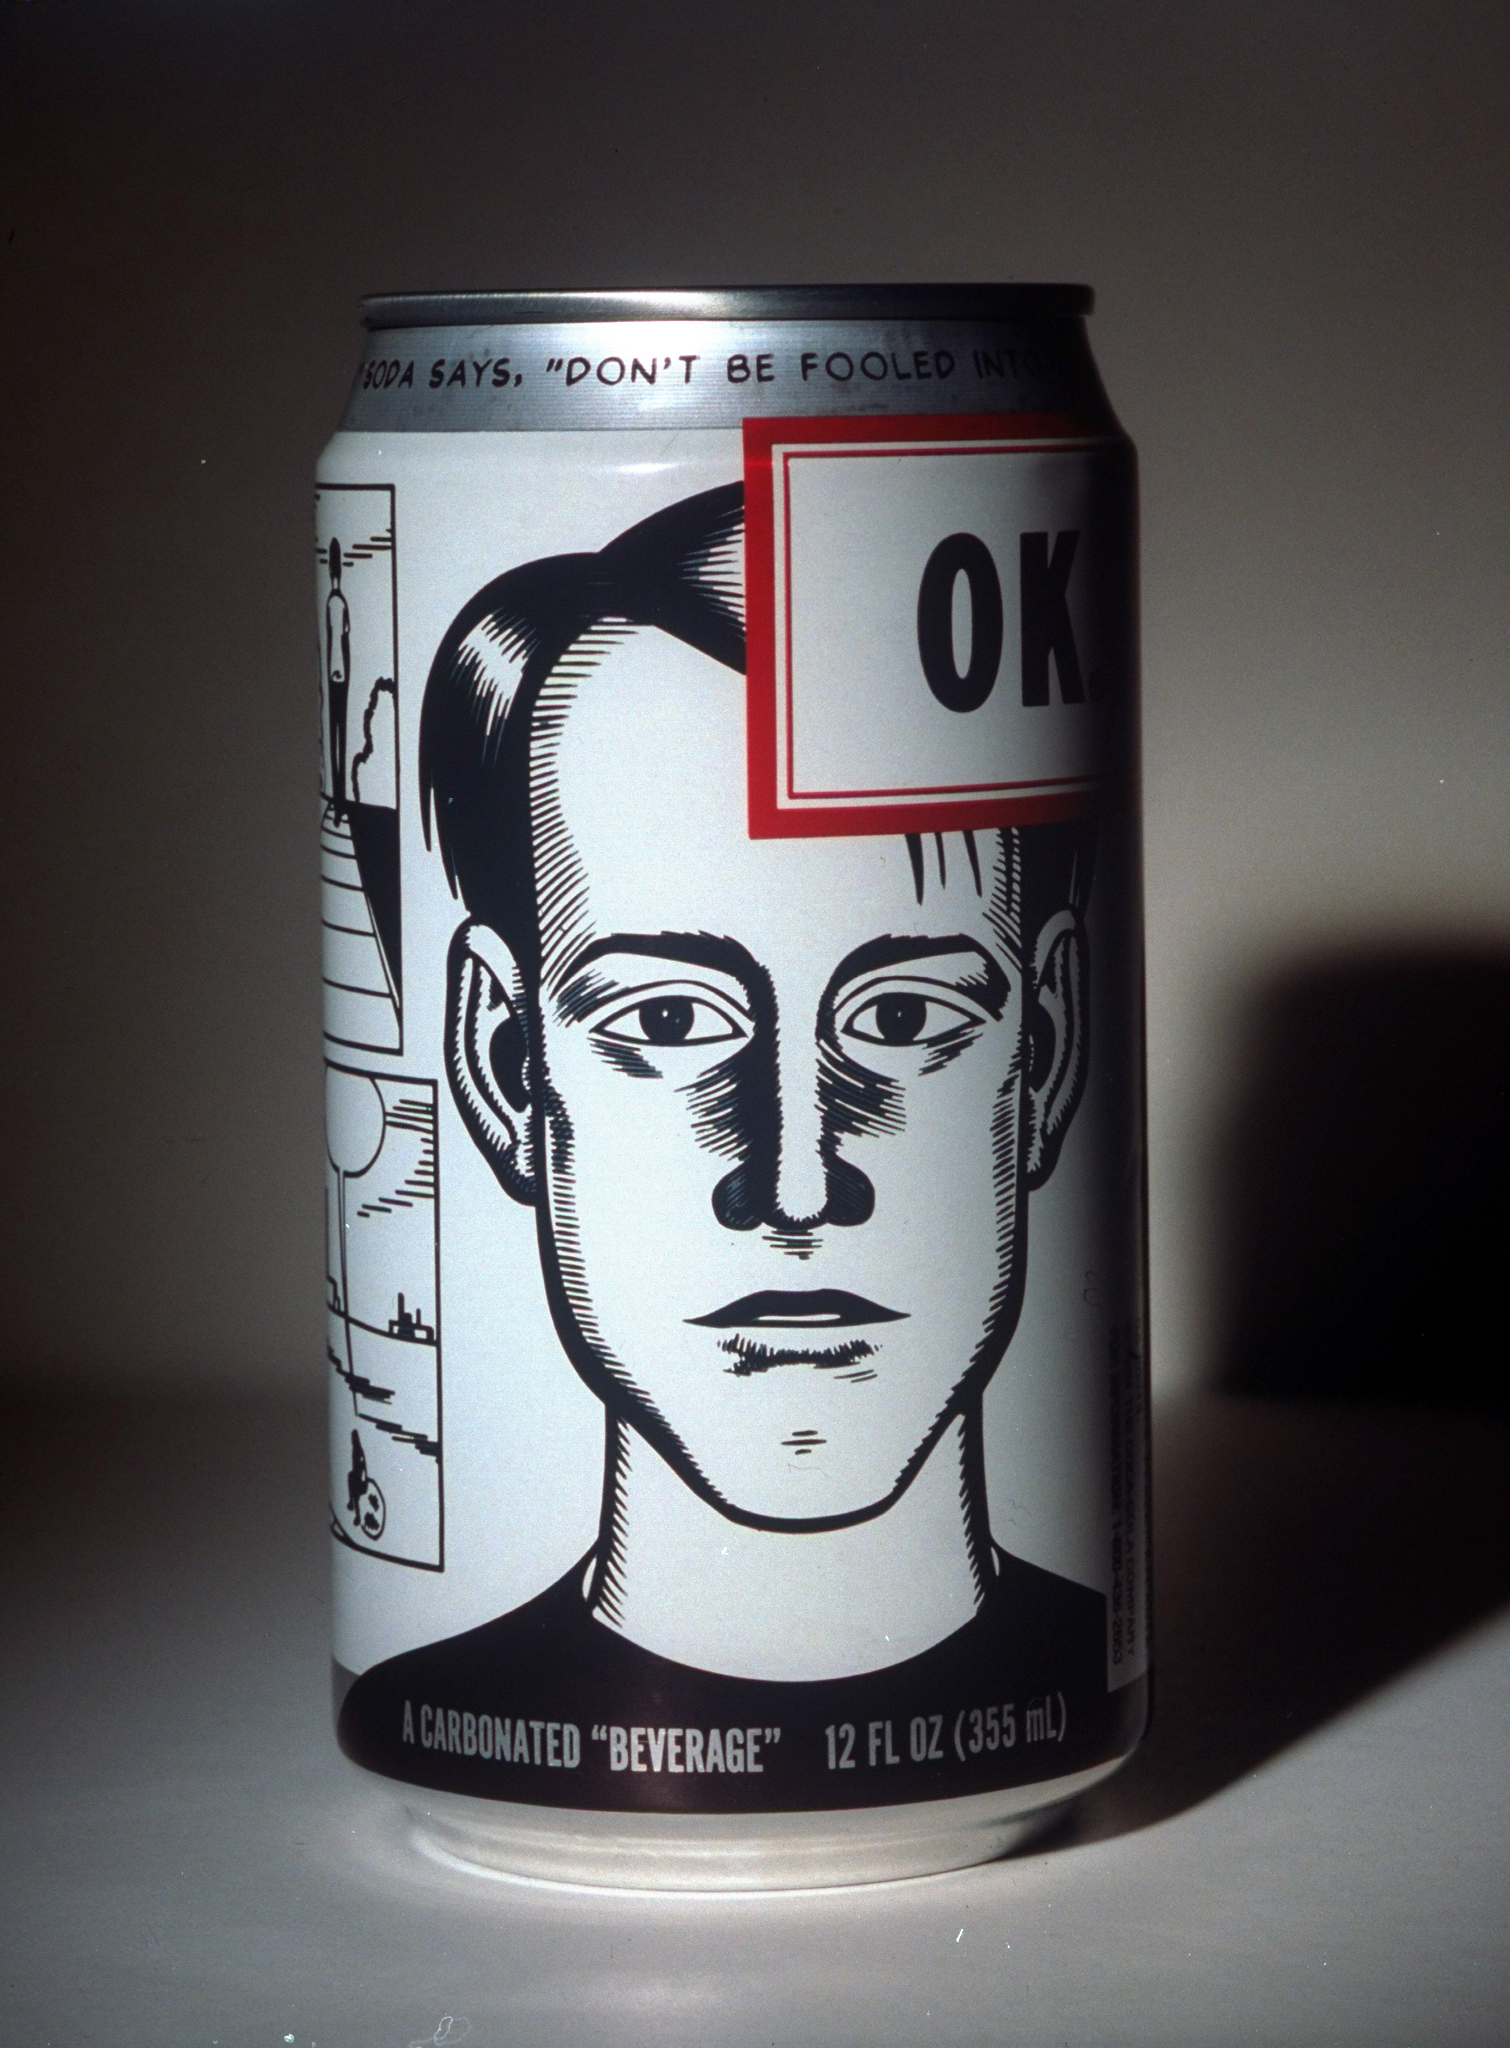 Coca-Cola's new OK soda